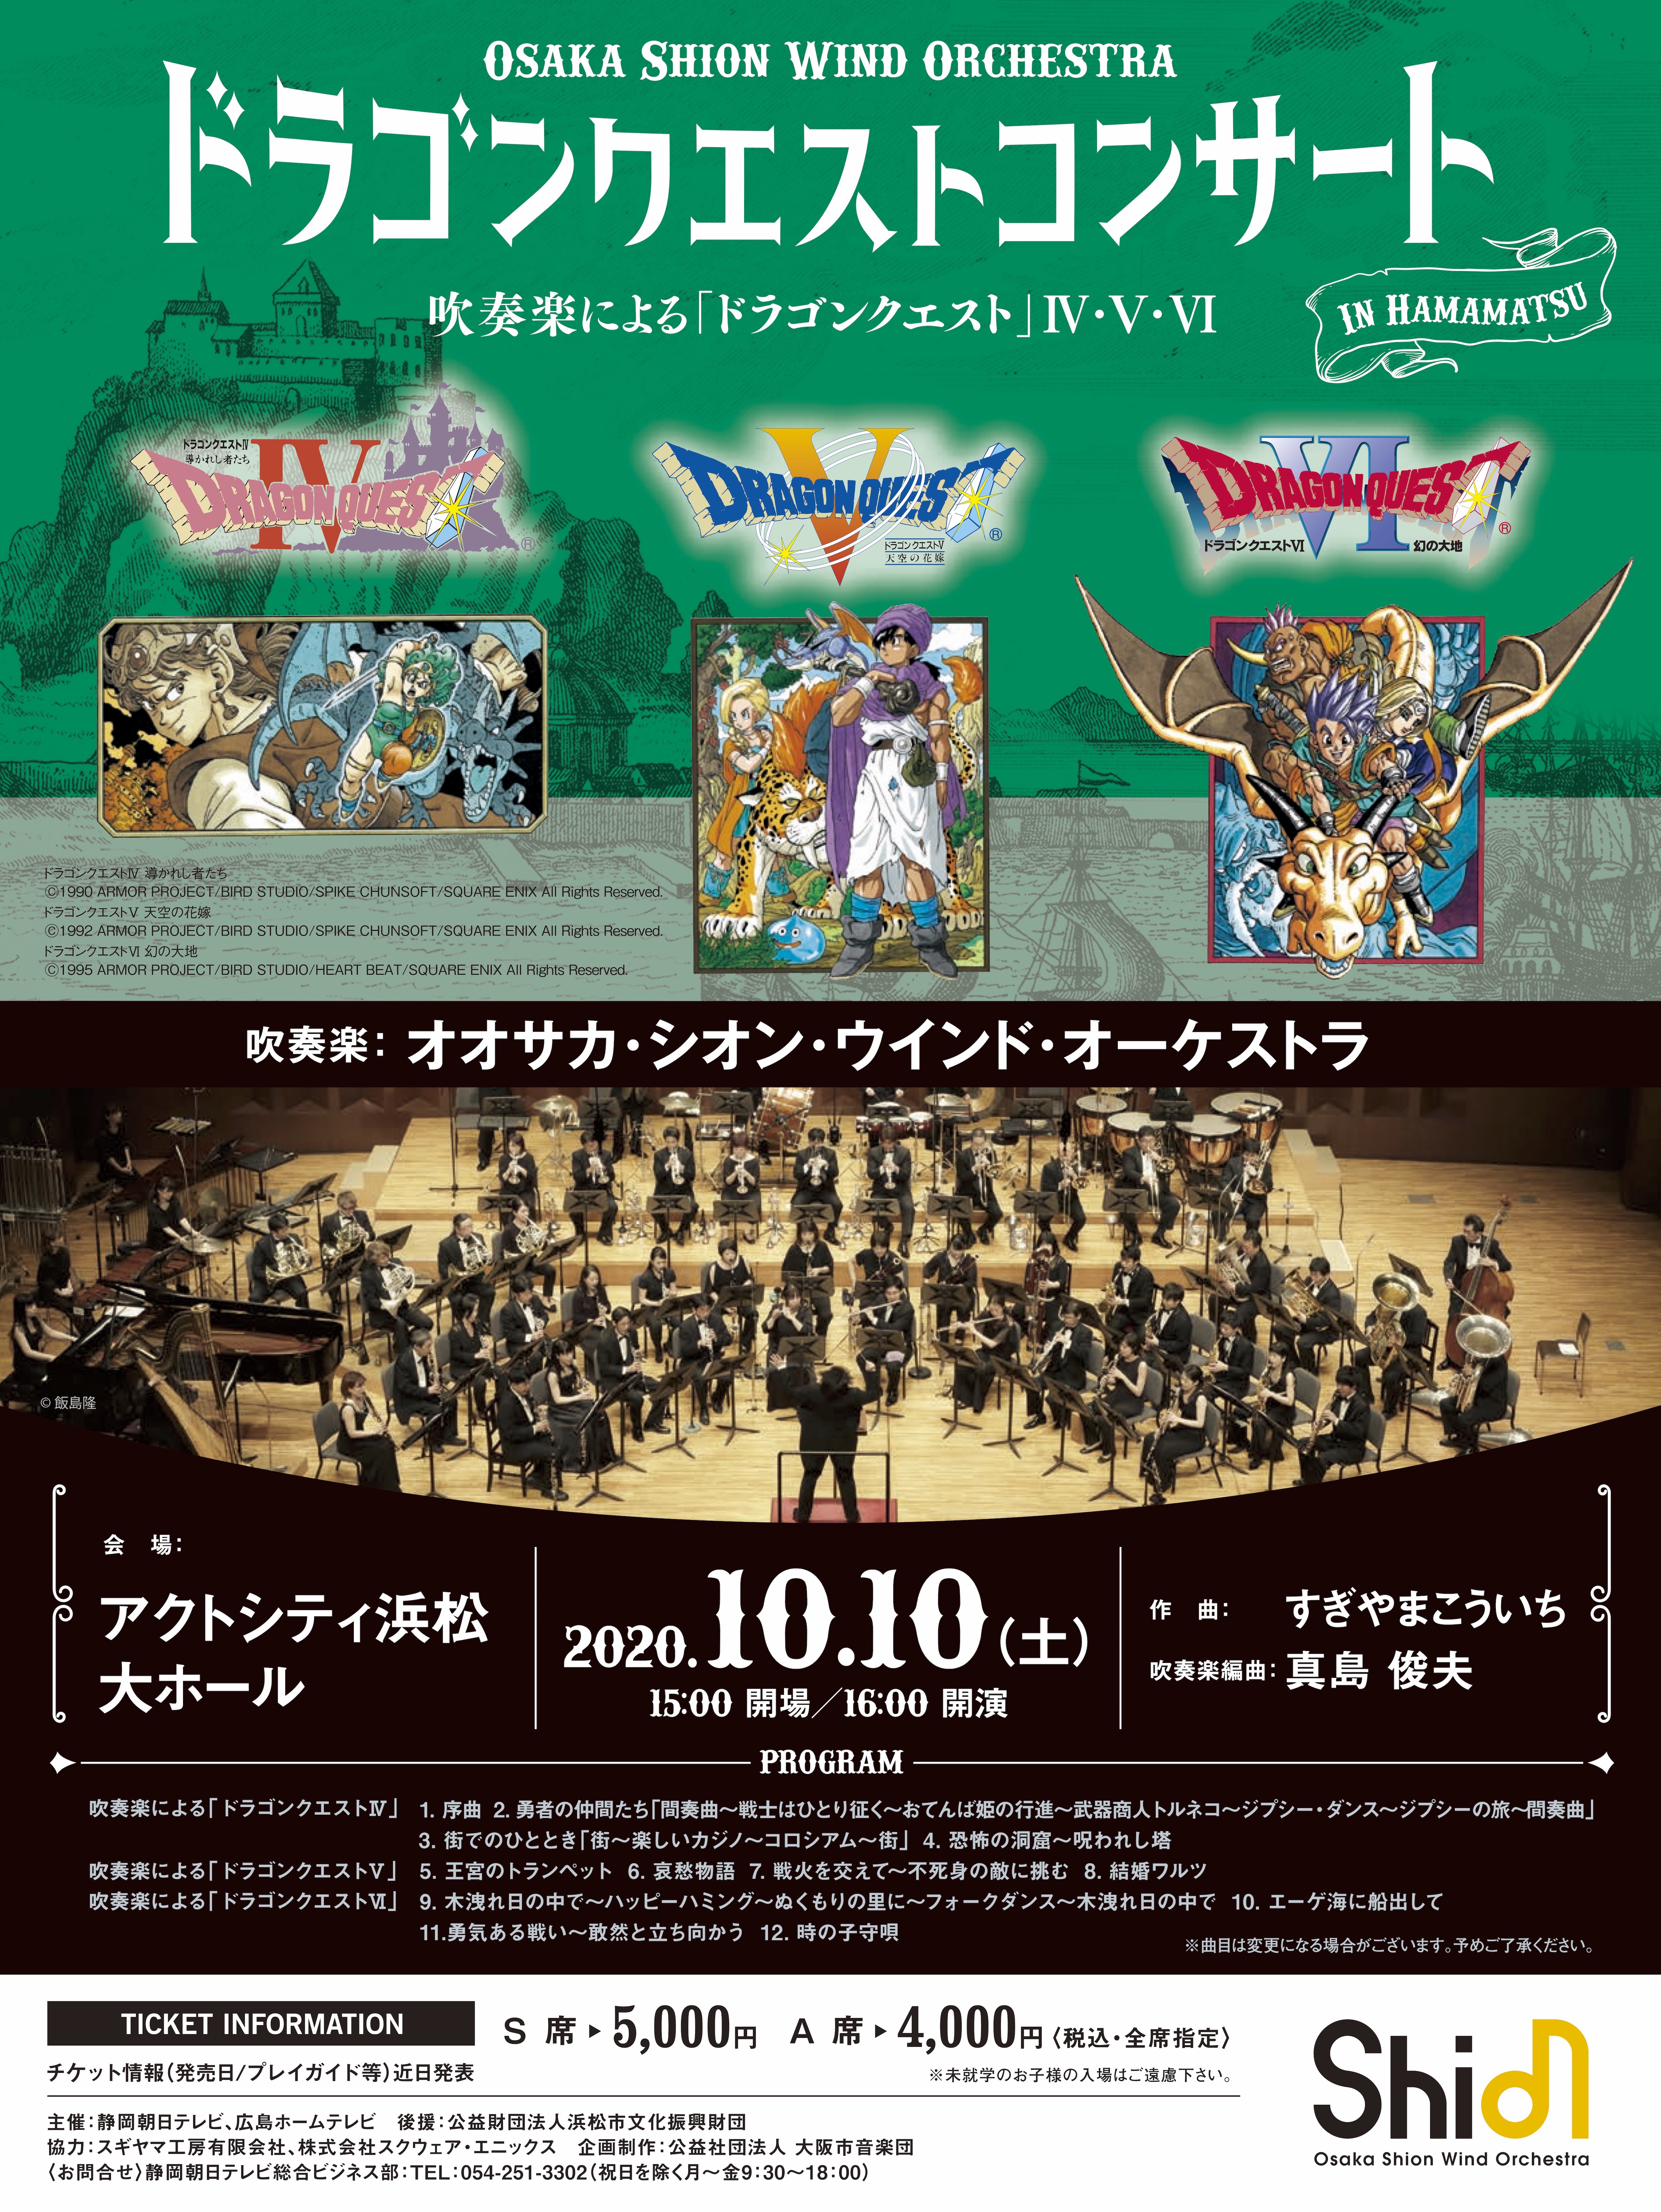 開催延期 ドラゴンクエストコンサート In 浜松 コンサート情報 Osaka Shion Wind Orchestra 大阪市音楽団